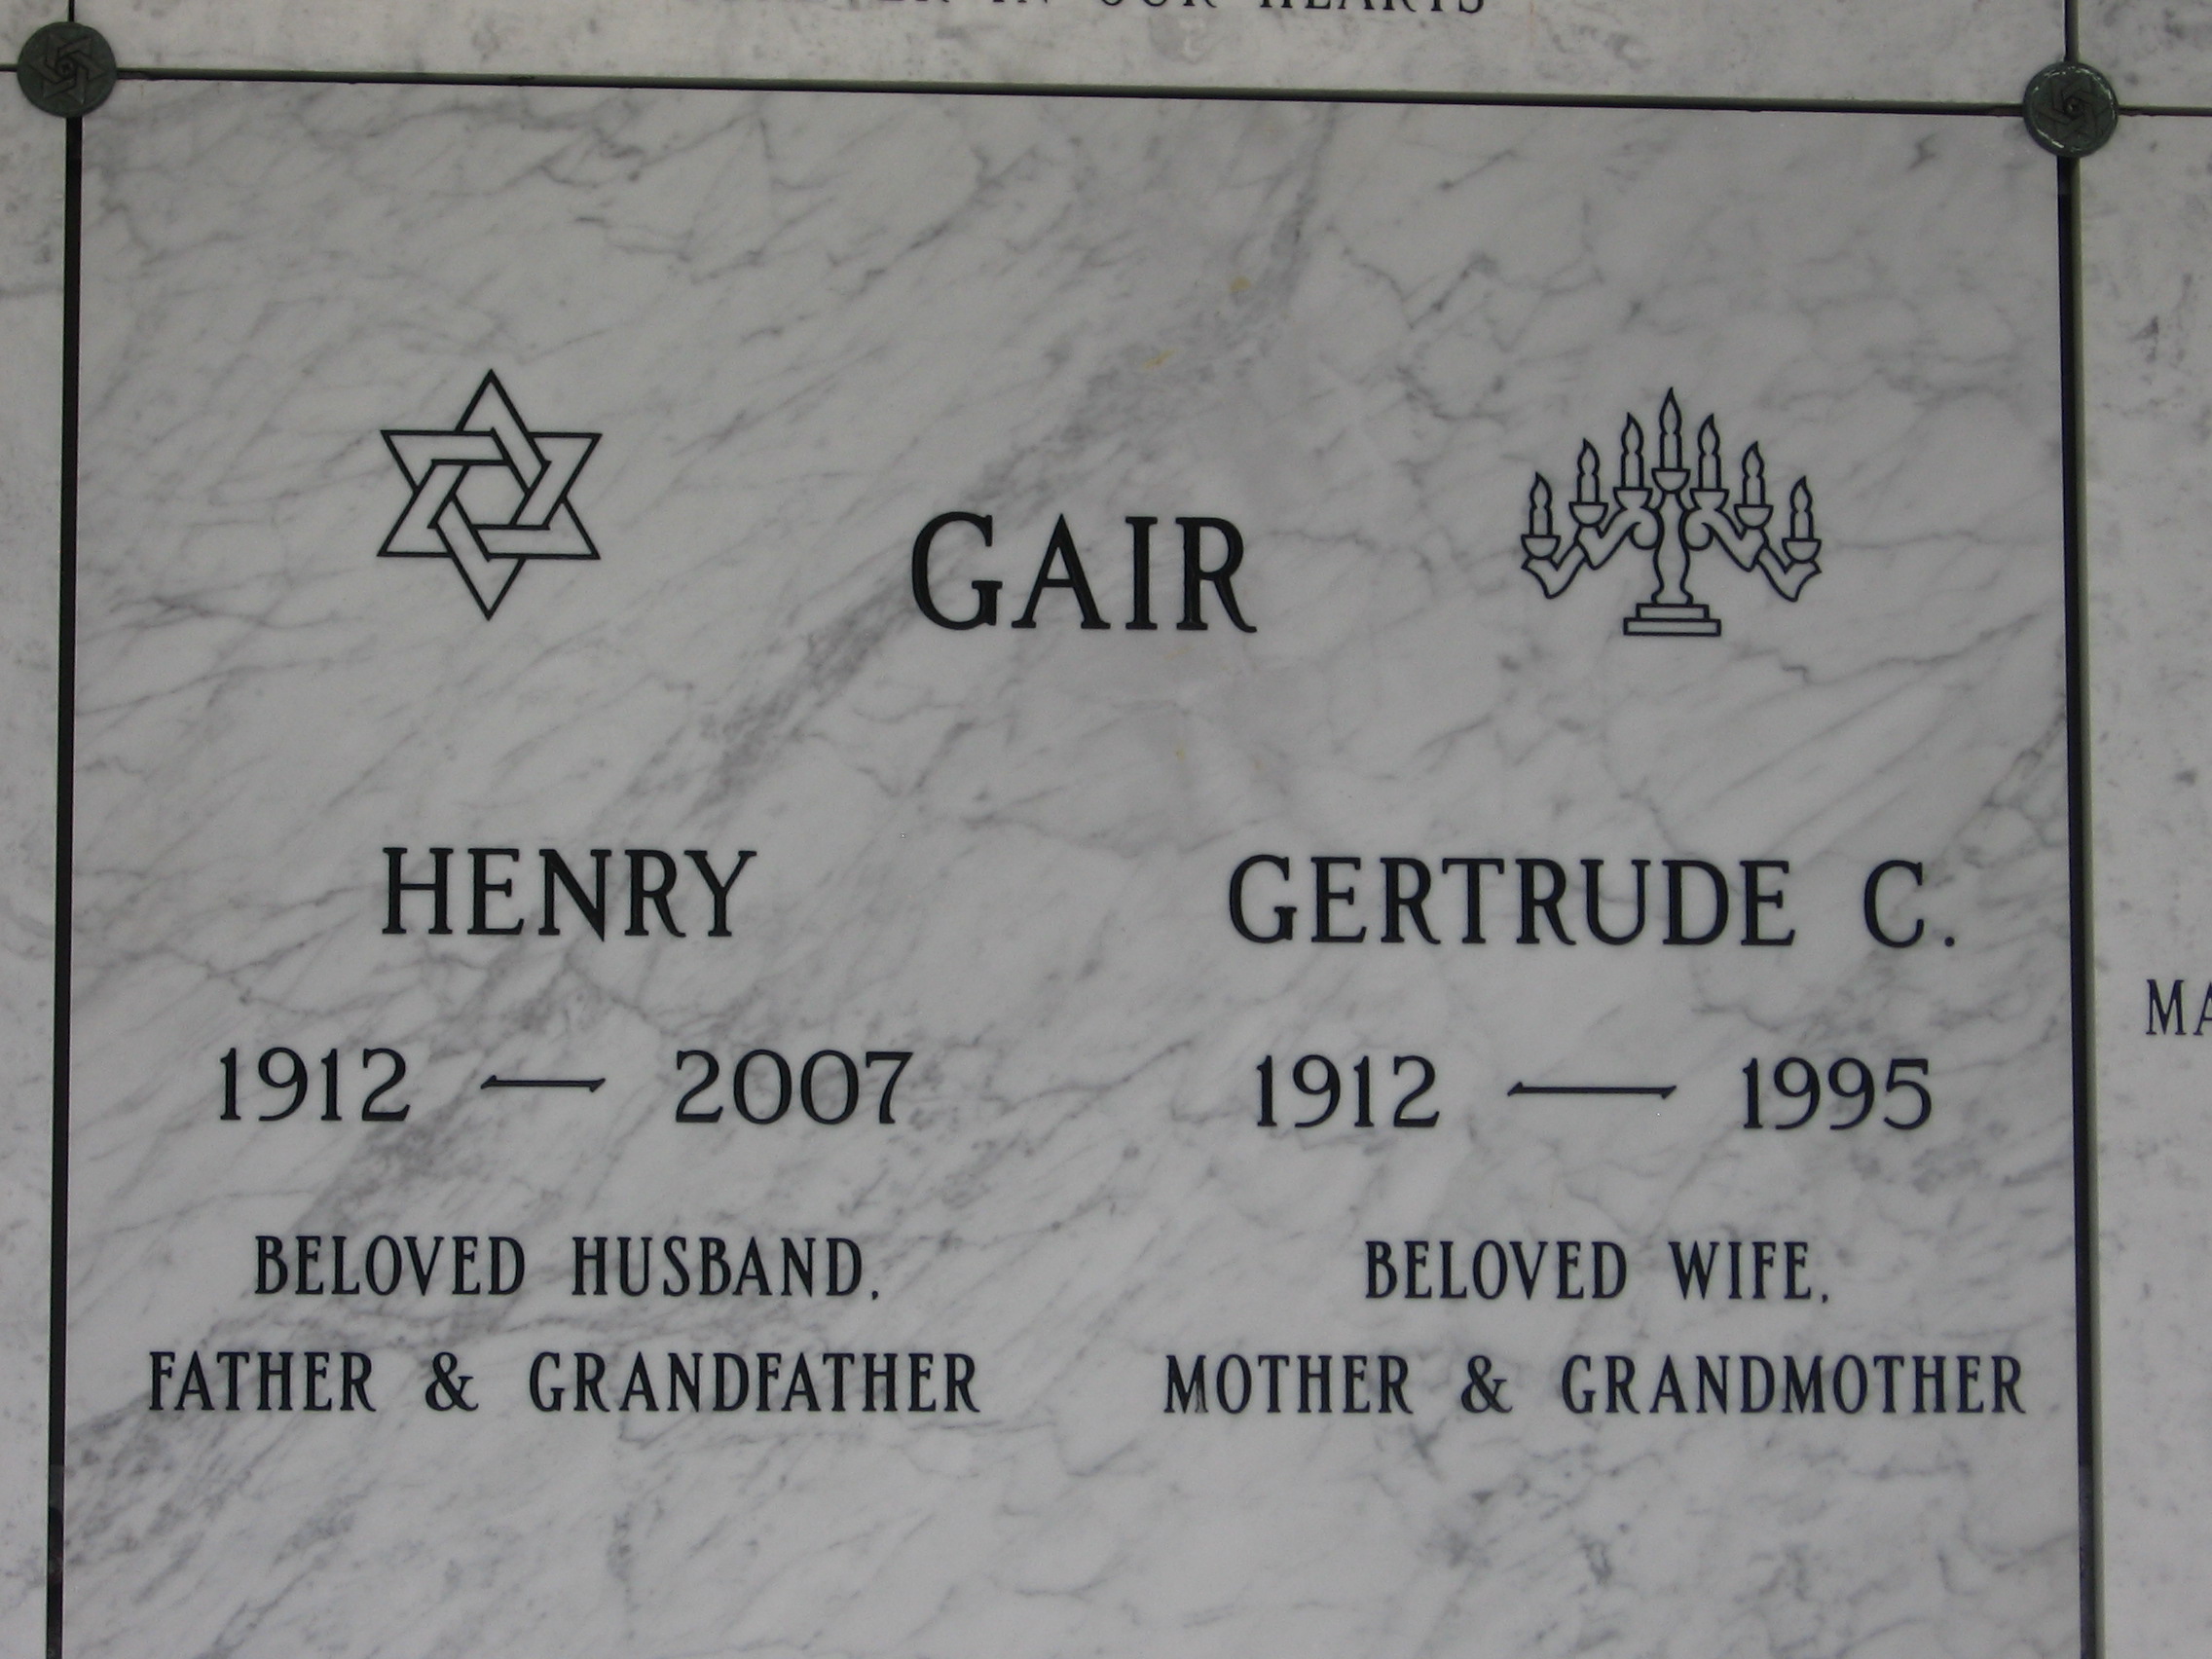 Gertrude C Gair